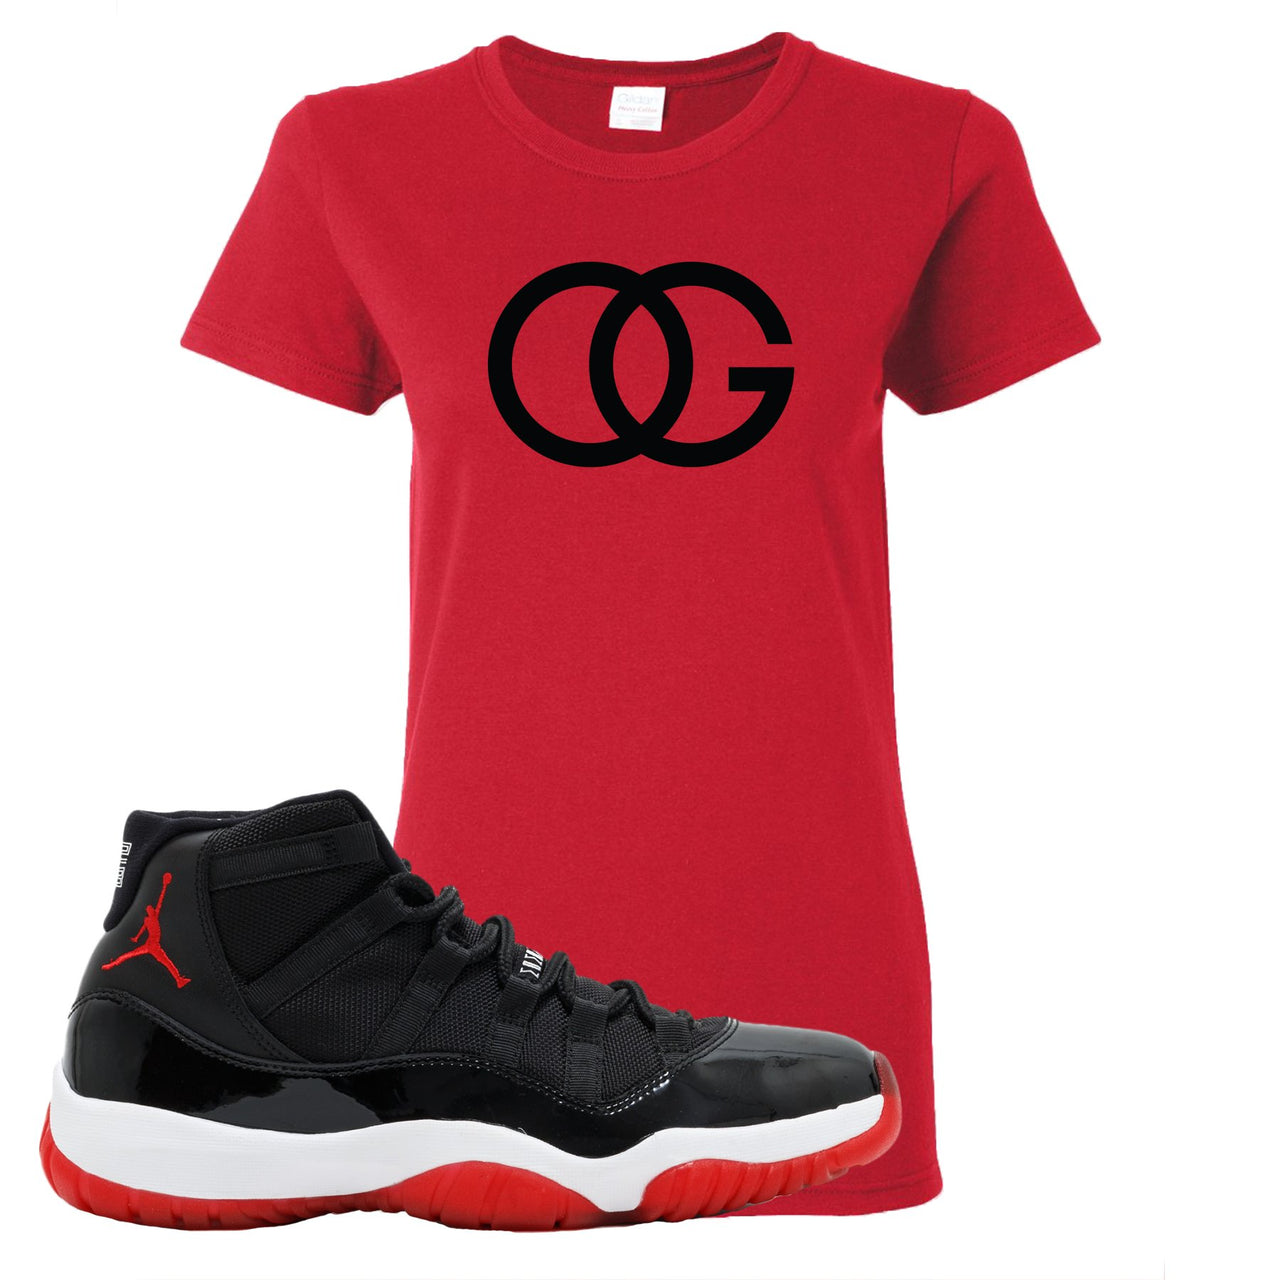 Jordan 11 Bred OG Red Sneaker Hook Up Women's T-Shirt